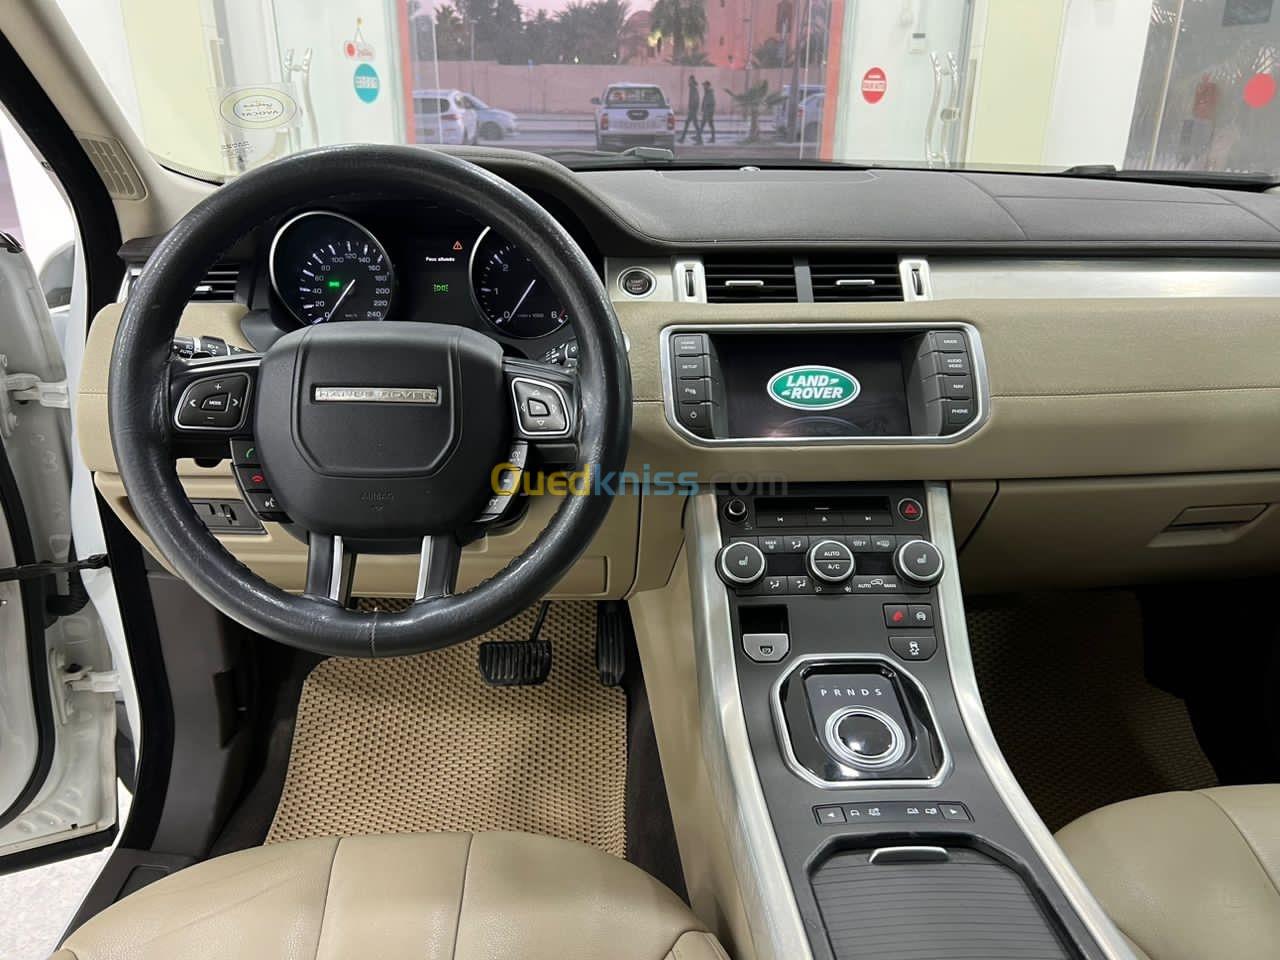 Land Rover Range Rover Evoque 2016 Range Rover Evoque